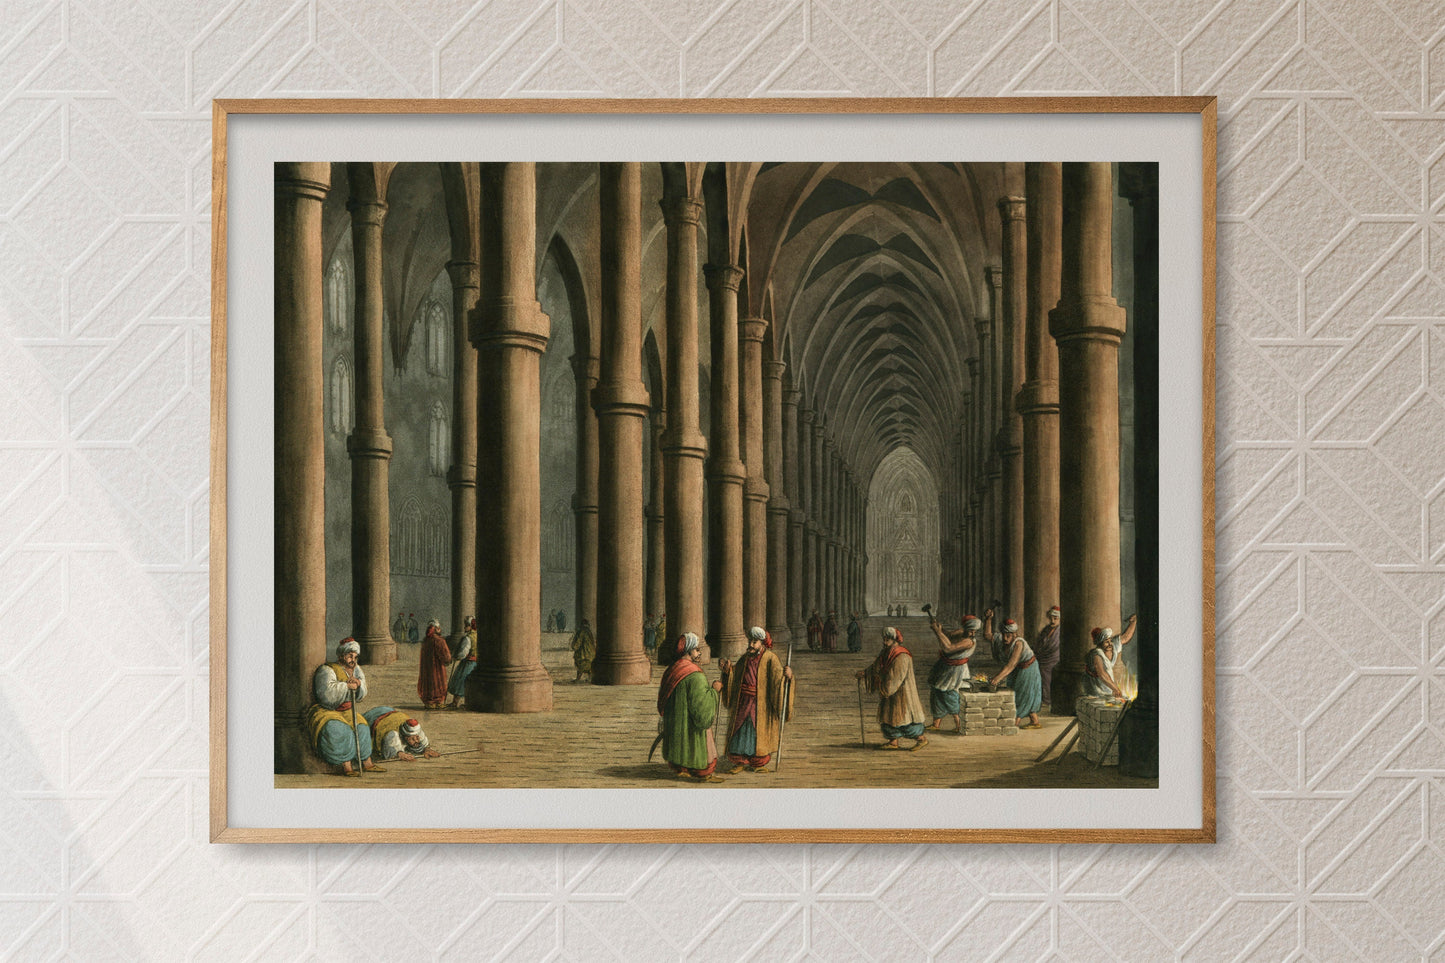 Cathedral at Tortosa Interior Poster Print Wall Hanging Decor